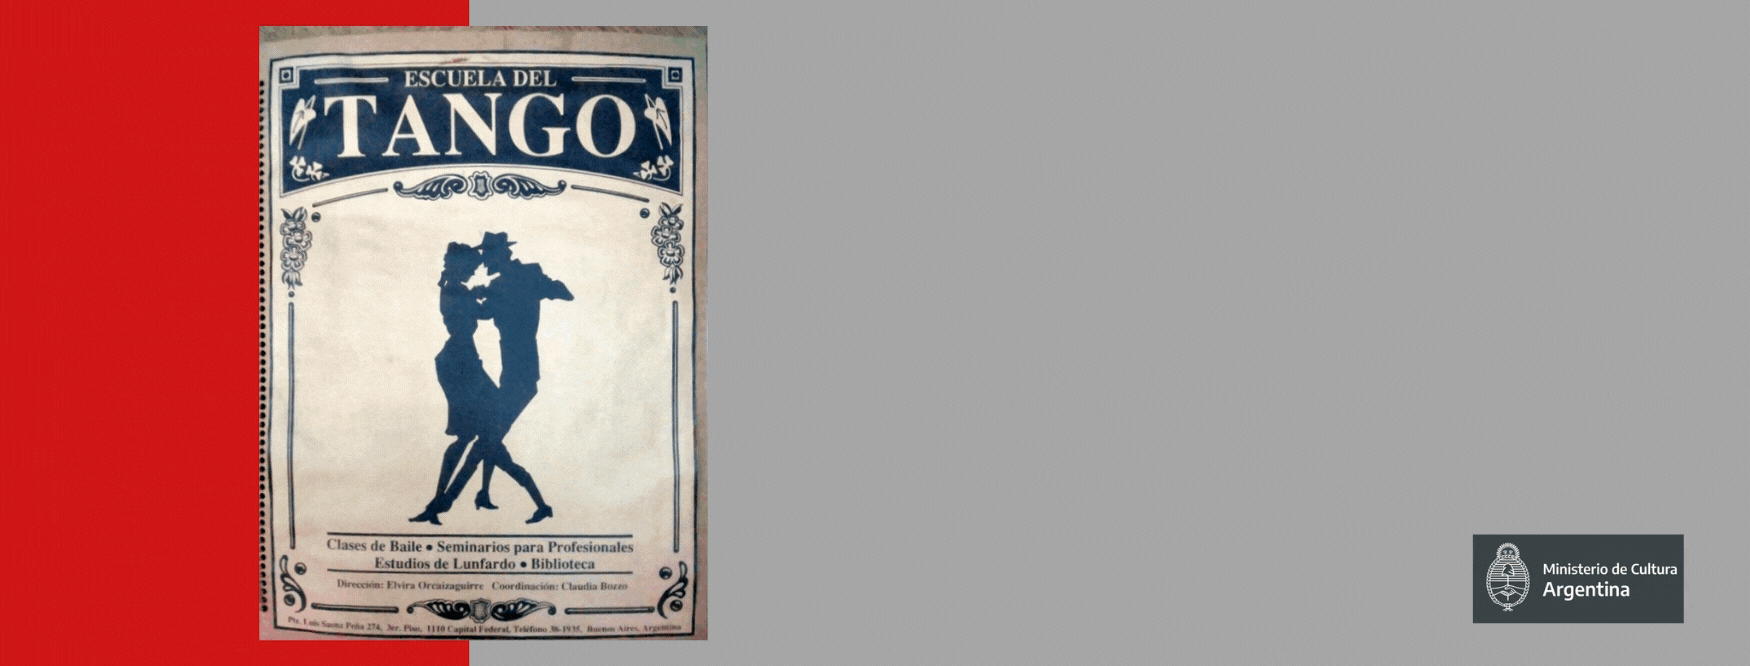 29º Aniversario de La Escuela del Tango portada de album de prensa